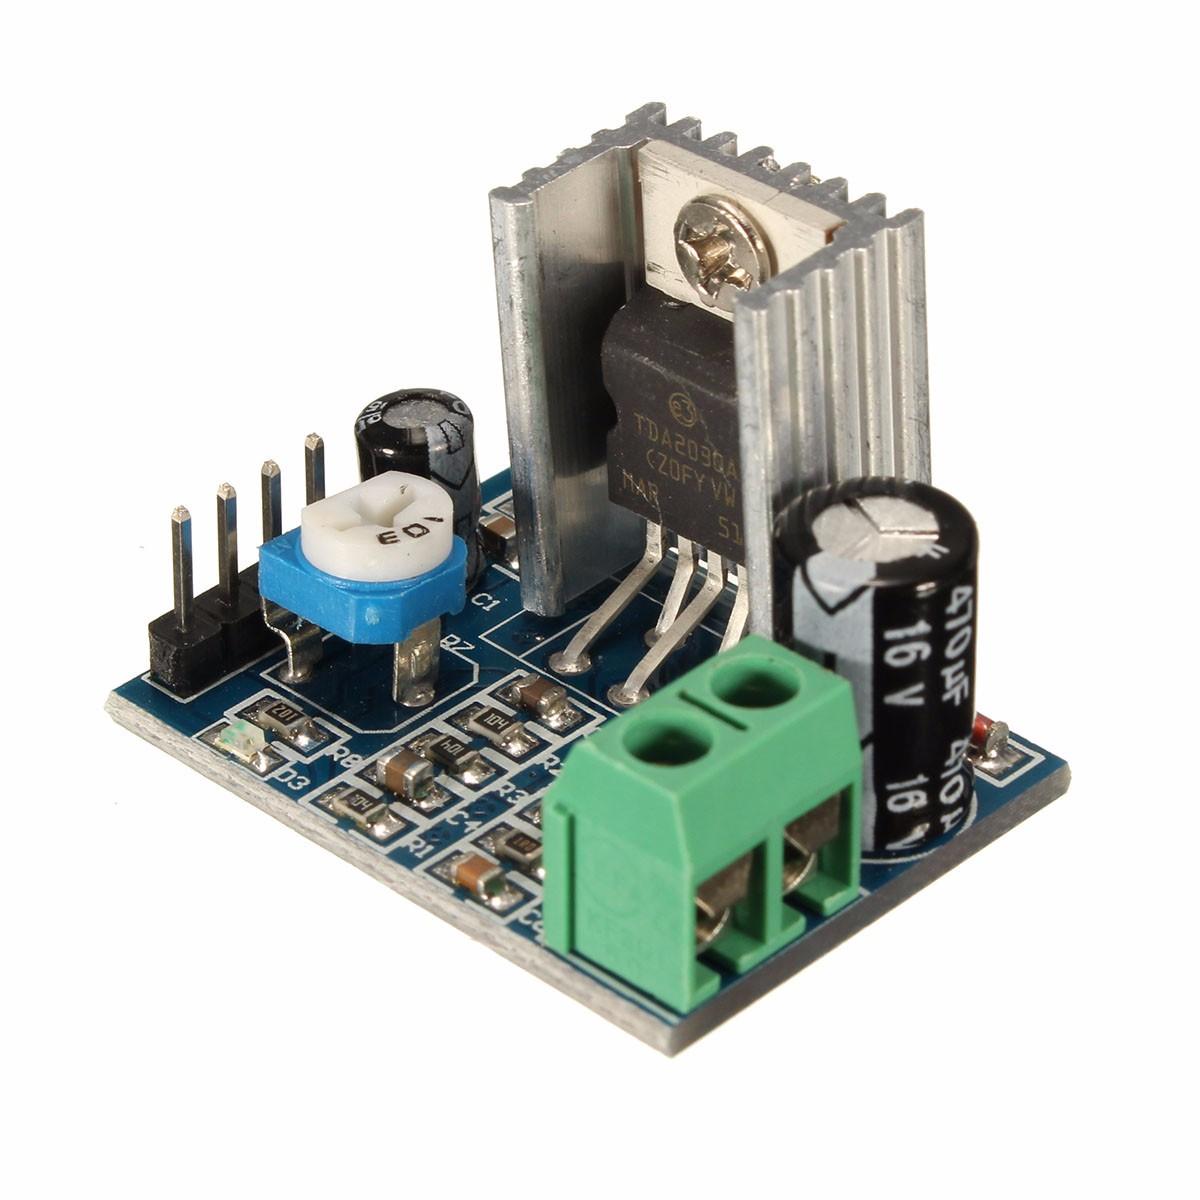 

10 шт. TDA2030A 6-12 В переменного / постоянного тока модуль платы усилителя звука с одним источником питания